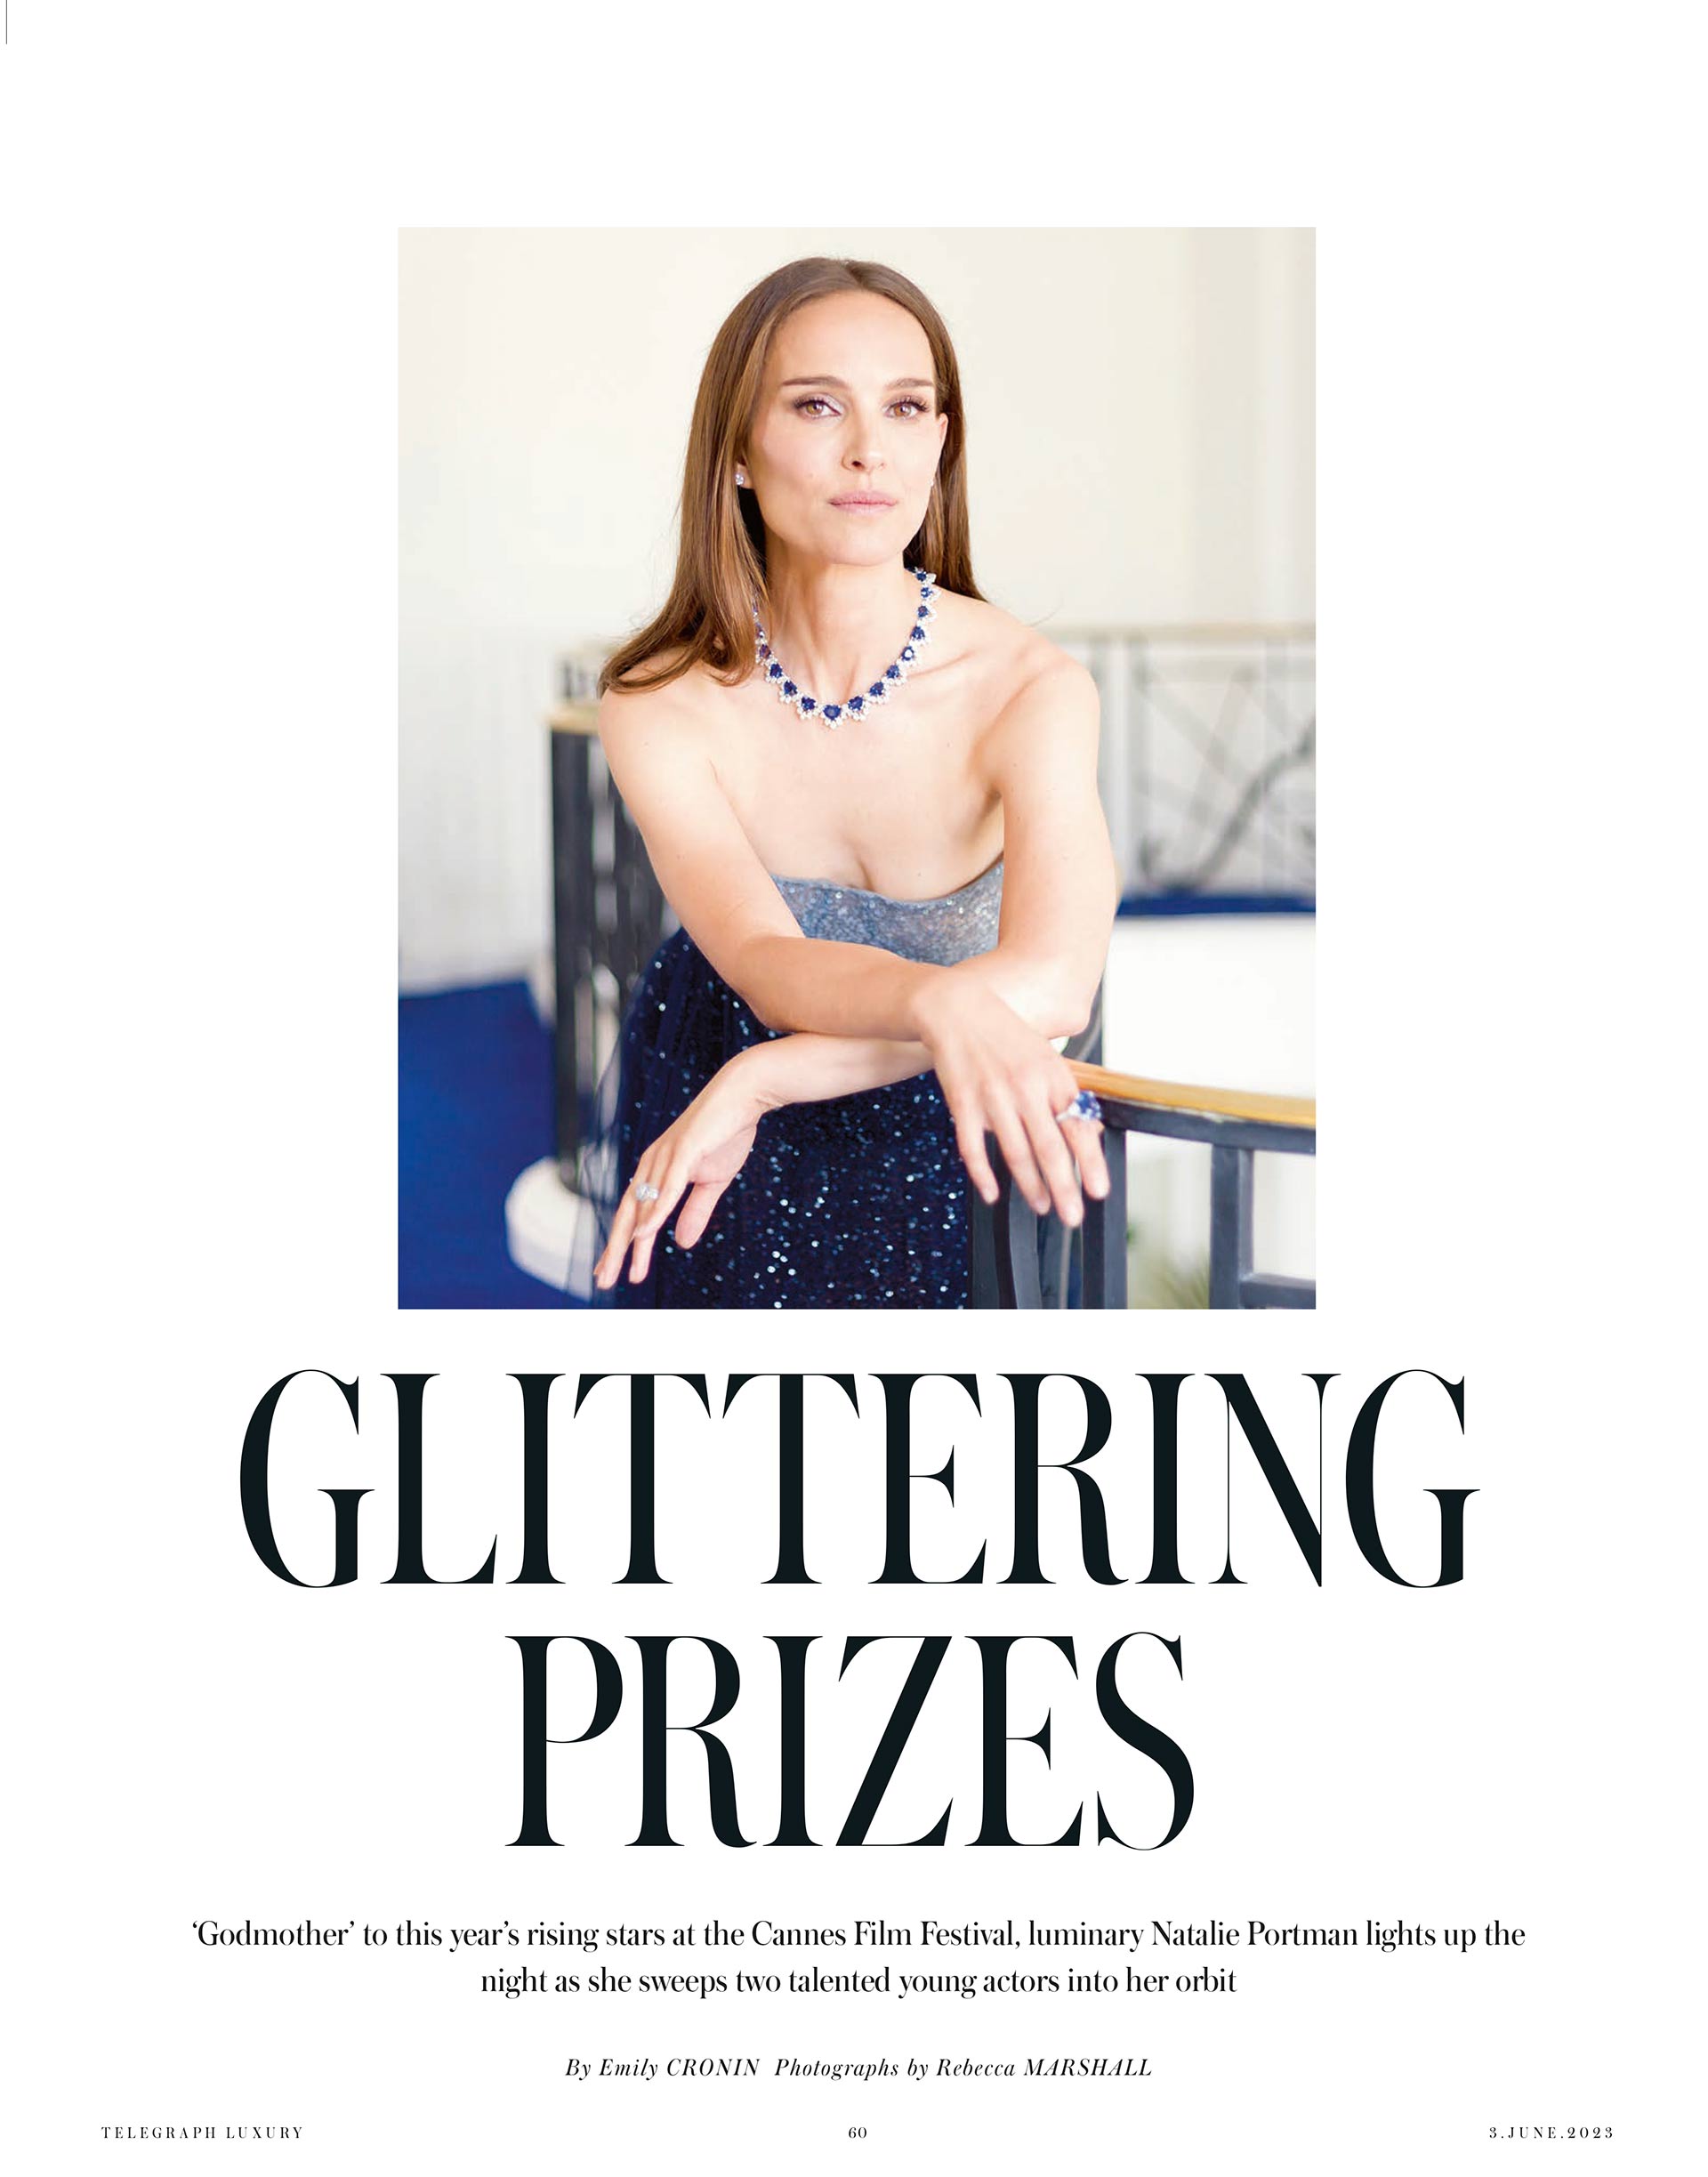 Magazine title page spread, showing portrait of Natalie Portman